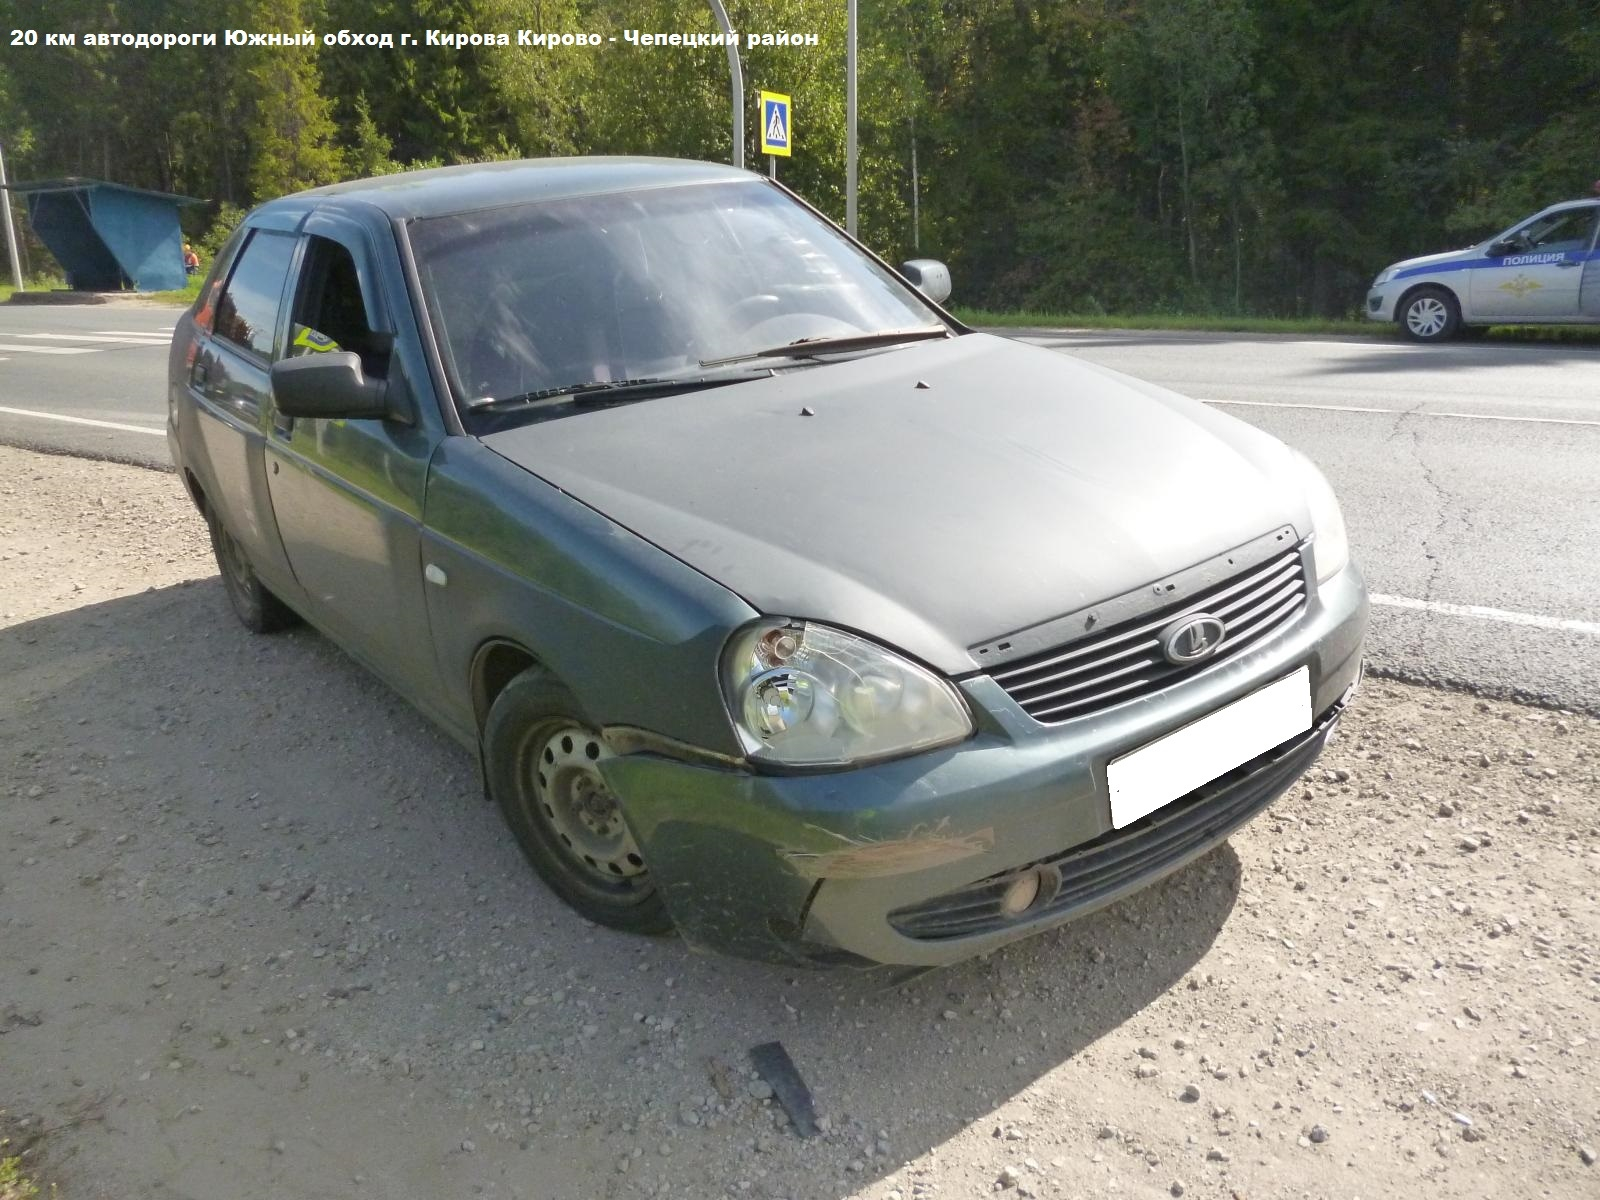 В Кирово-Чепецком районе произошла авария: пострадавшего увезли на "скорой"